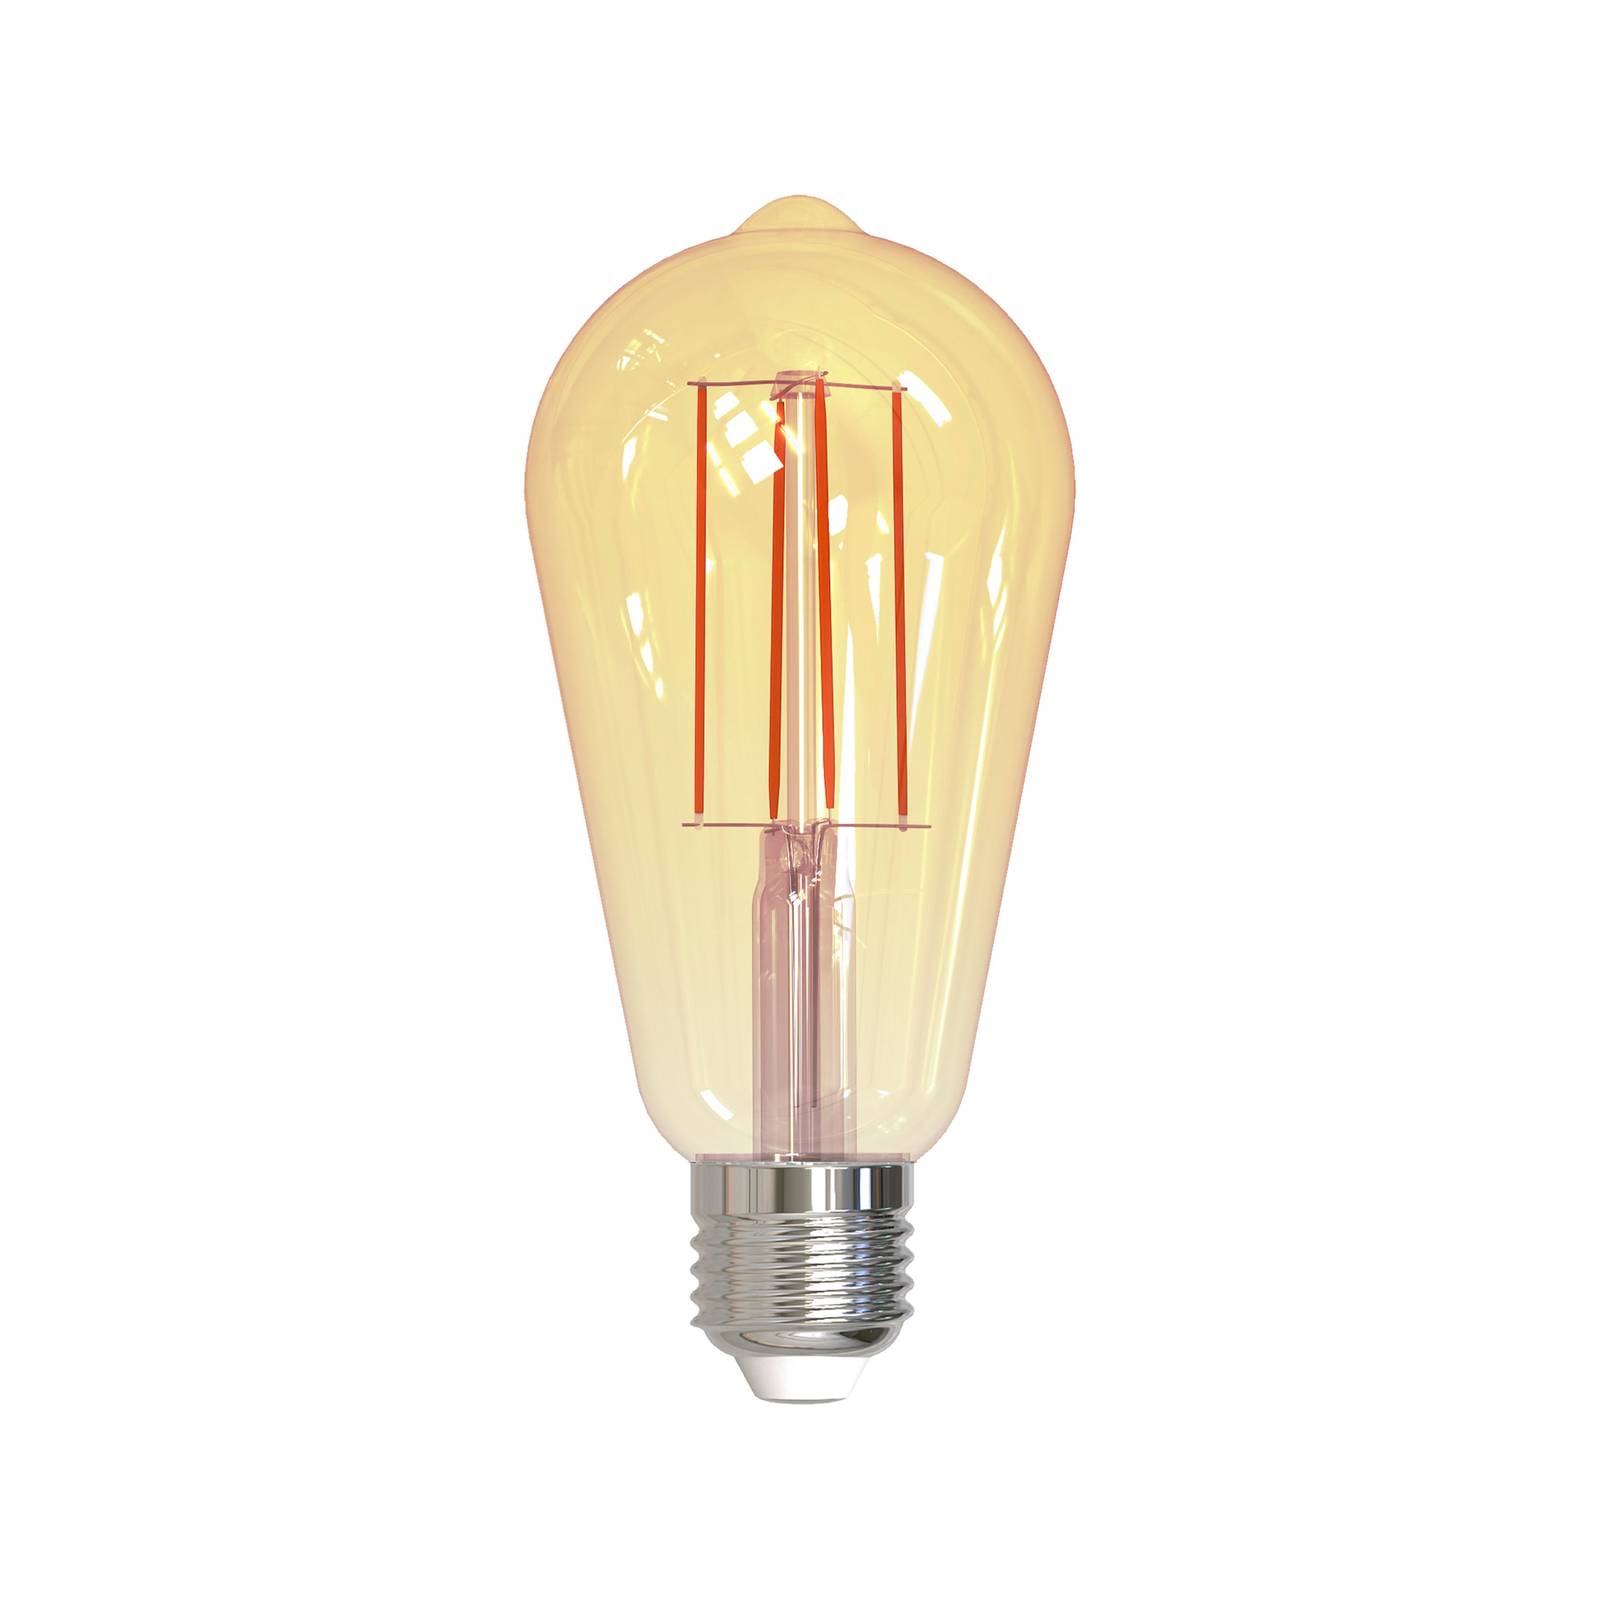 Müller-Licht Ampoule LED rustique E27 7W dorée